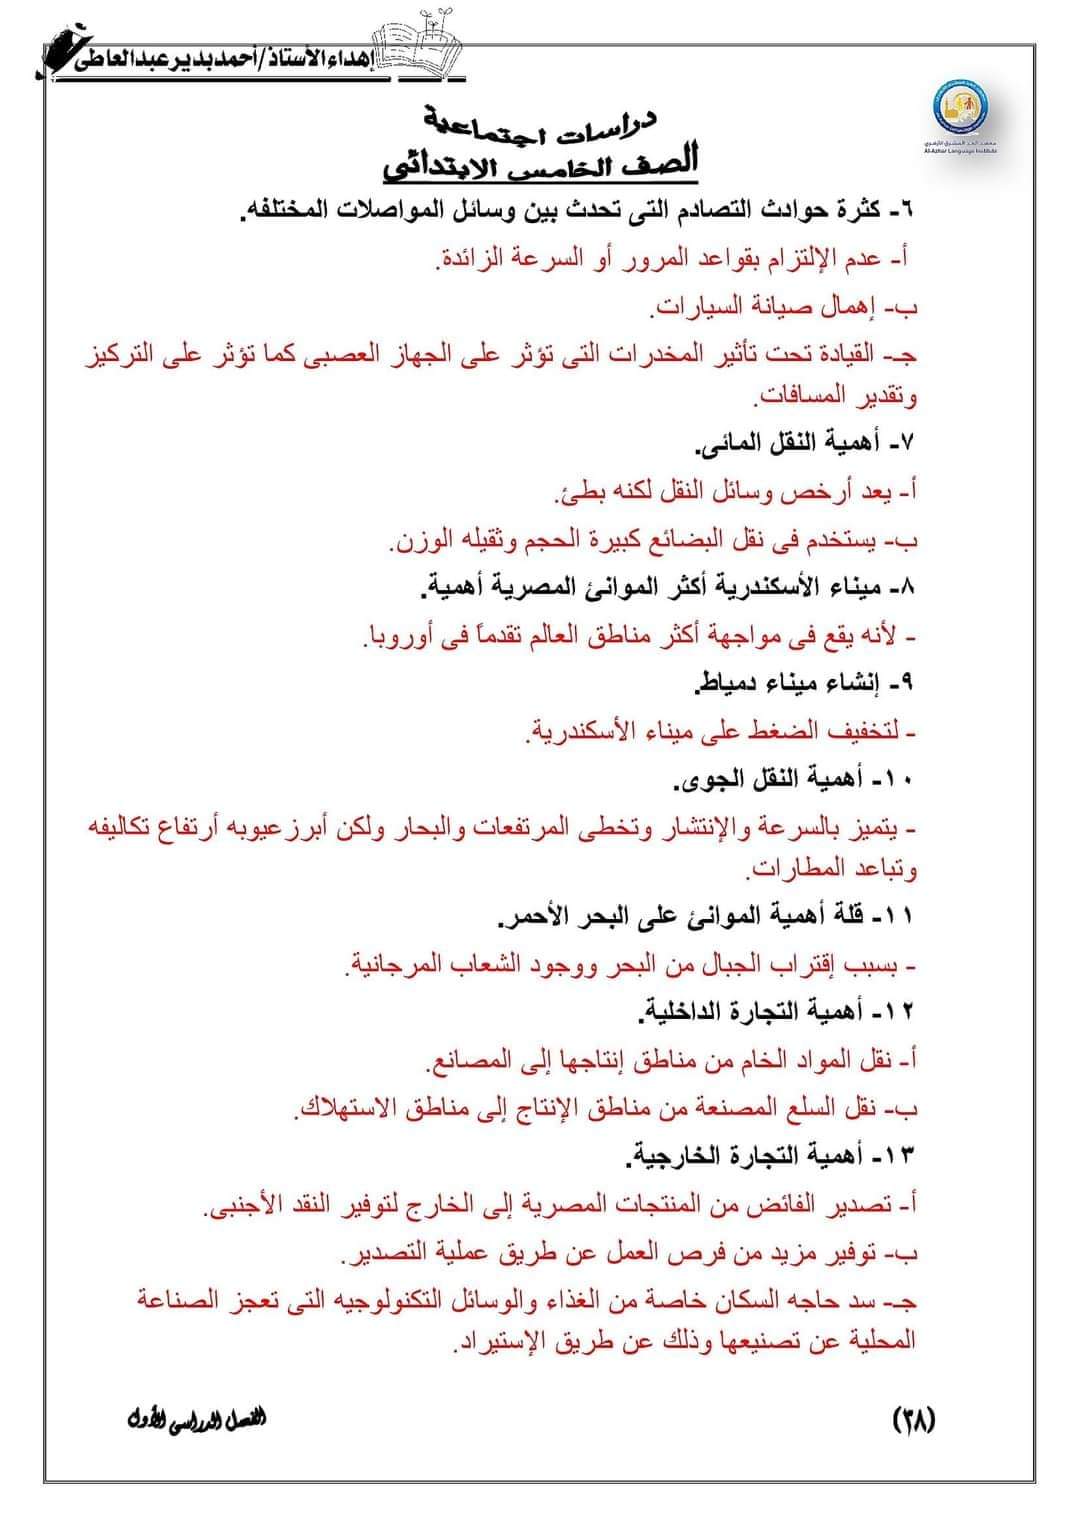 المراجعة النهائية كل مواد خامسة ابتدائي - احمد بدير عبد العاطي